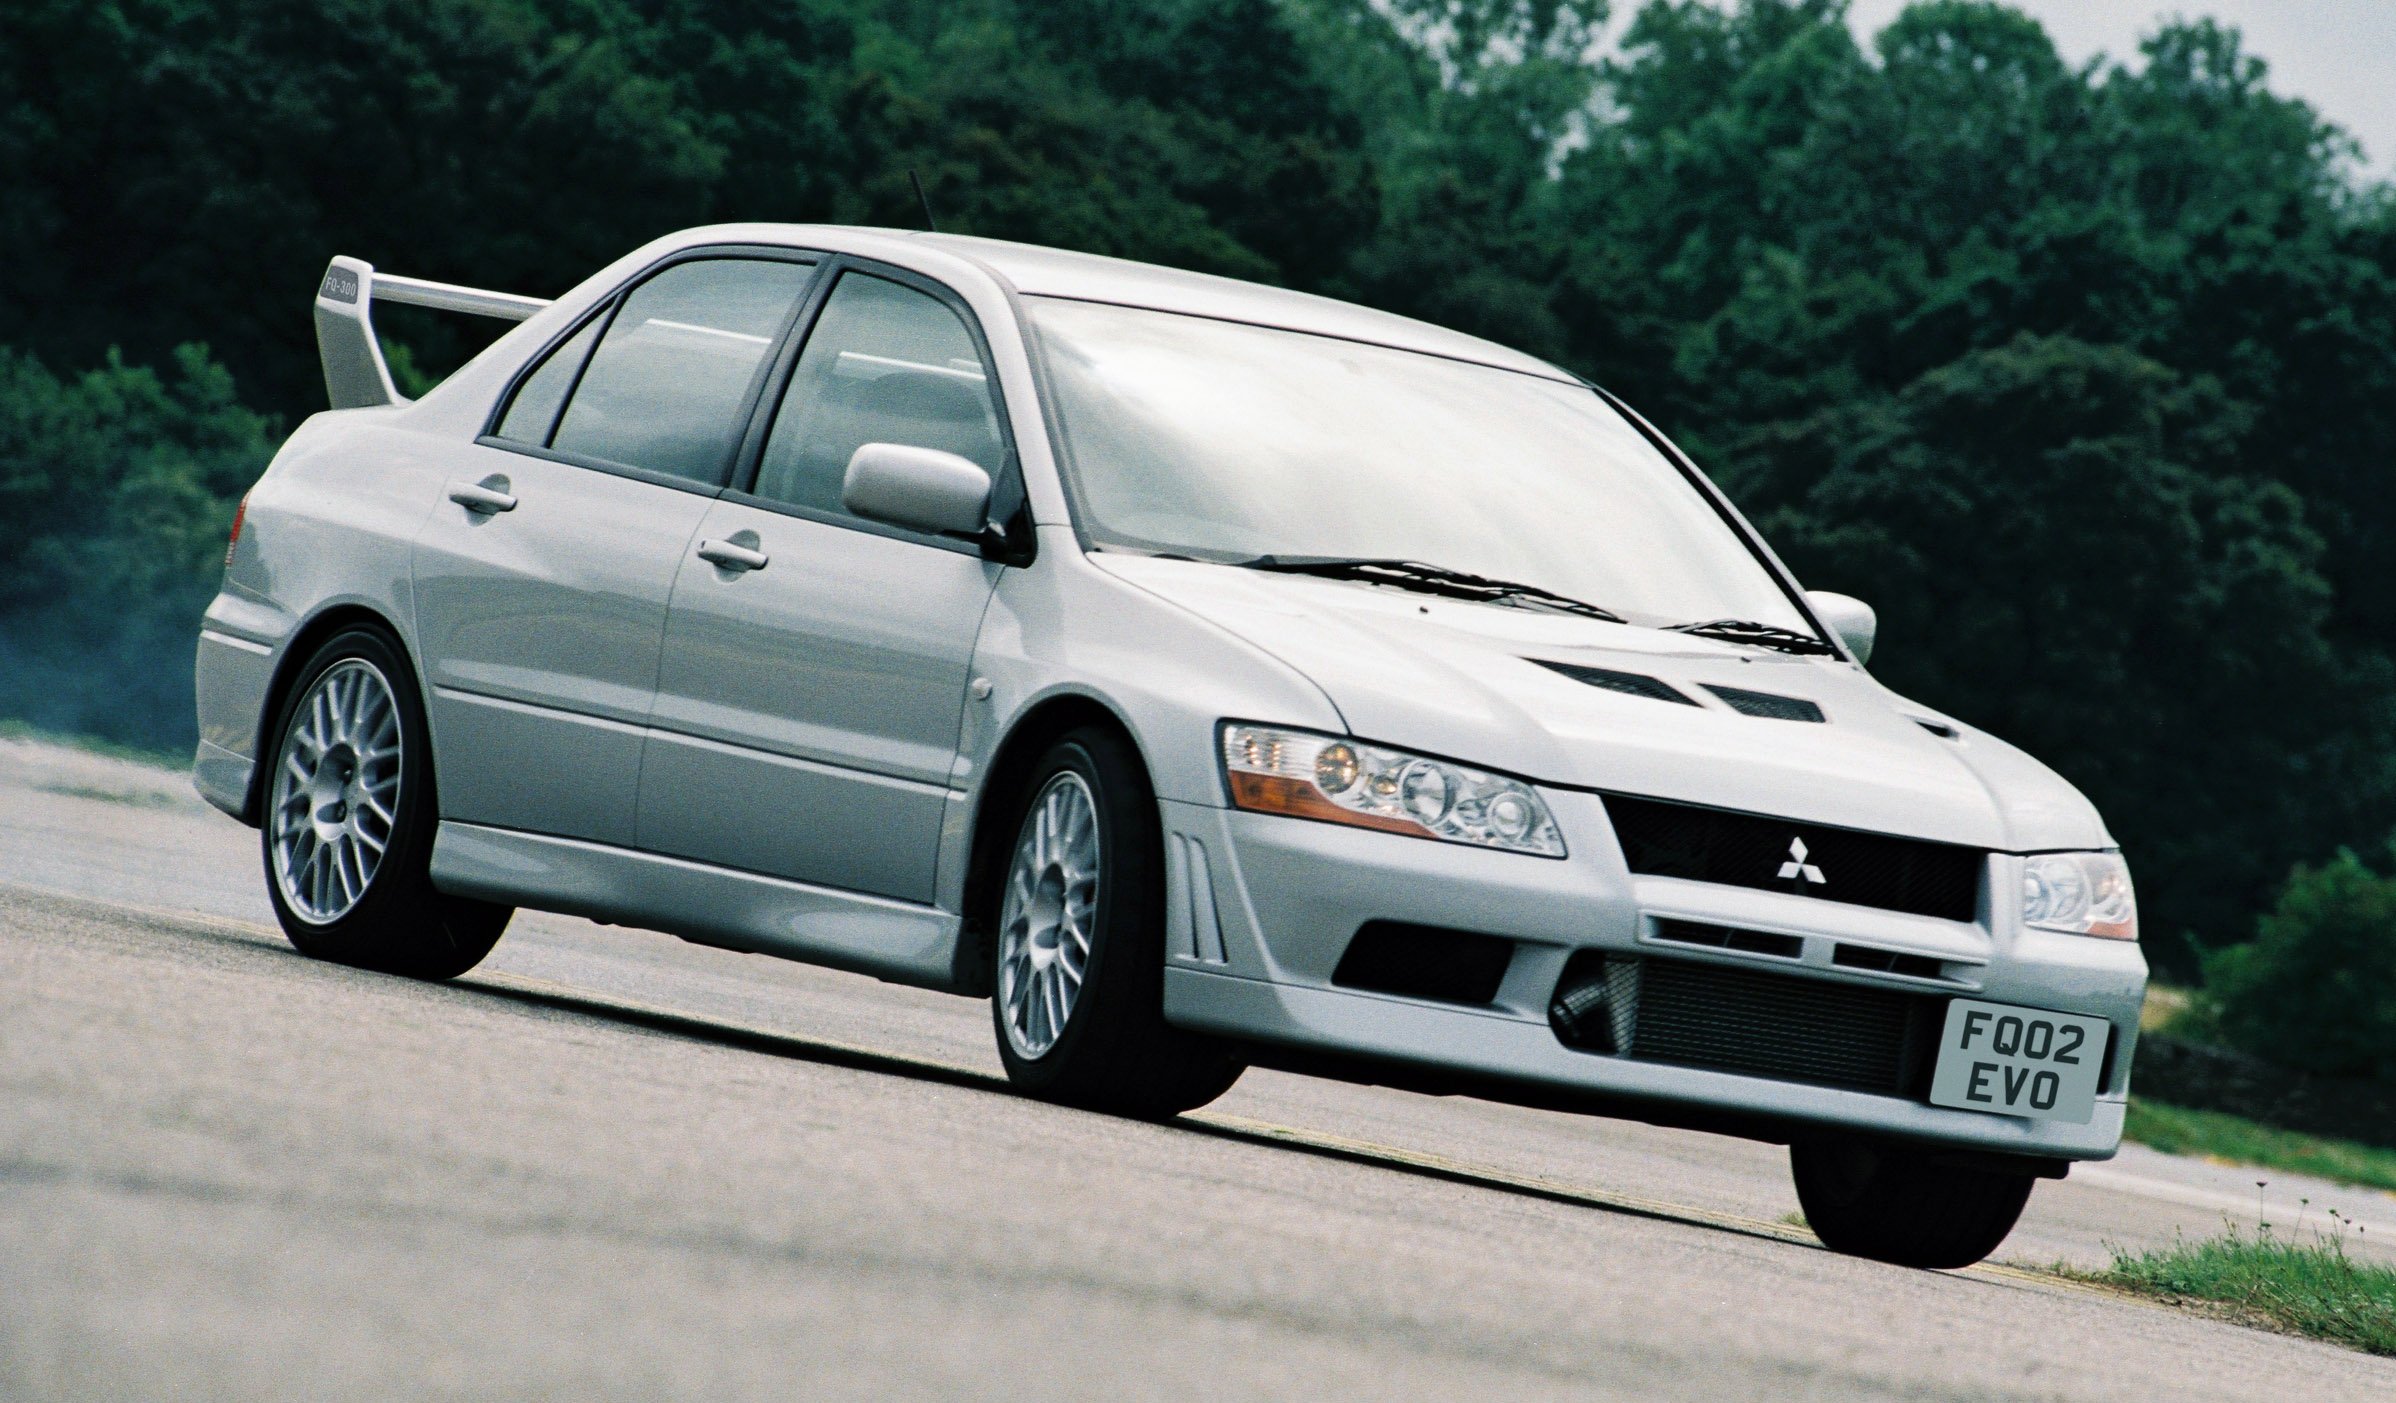 2001 Mitsubishi Lancer Evolution VII Extreme SC via Evo.